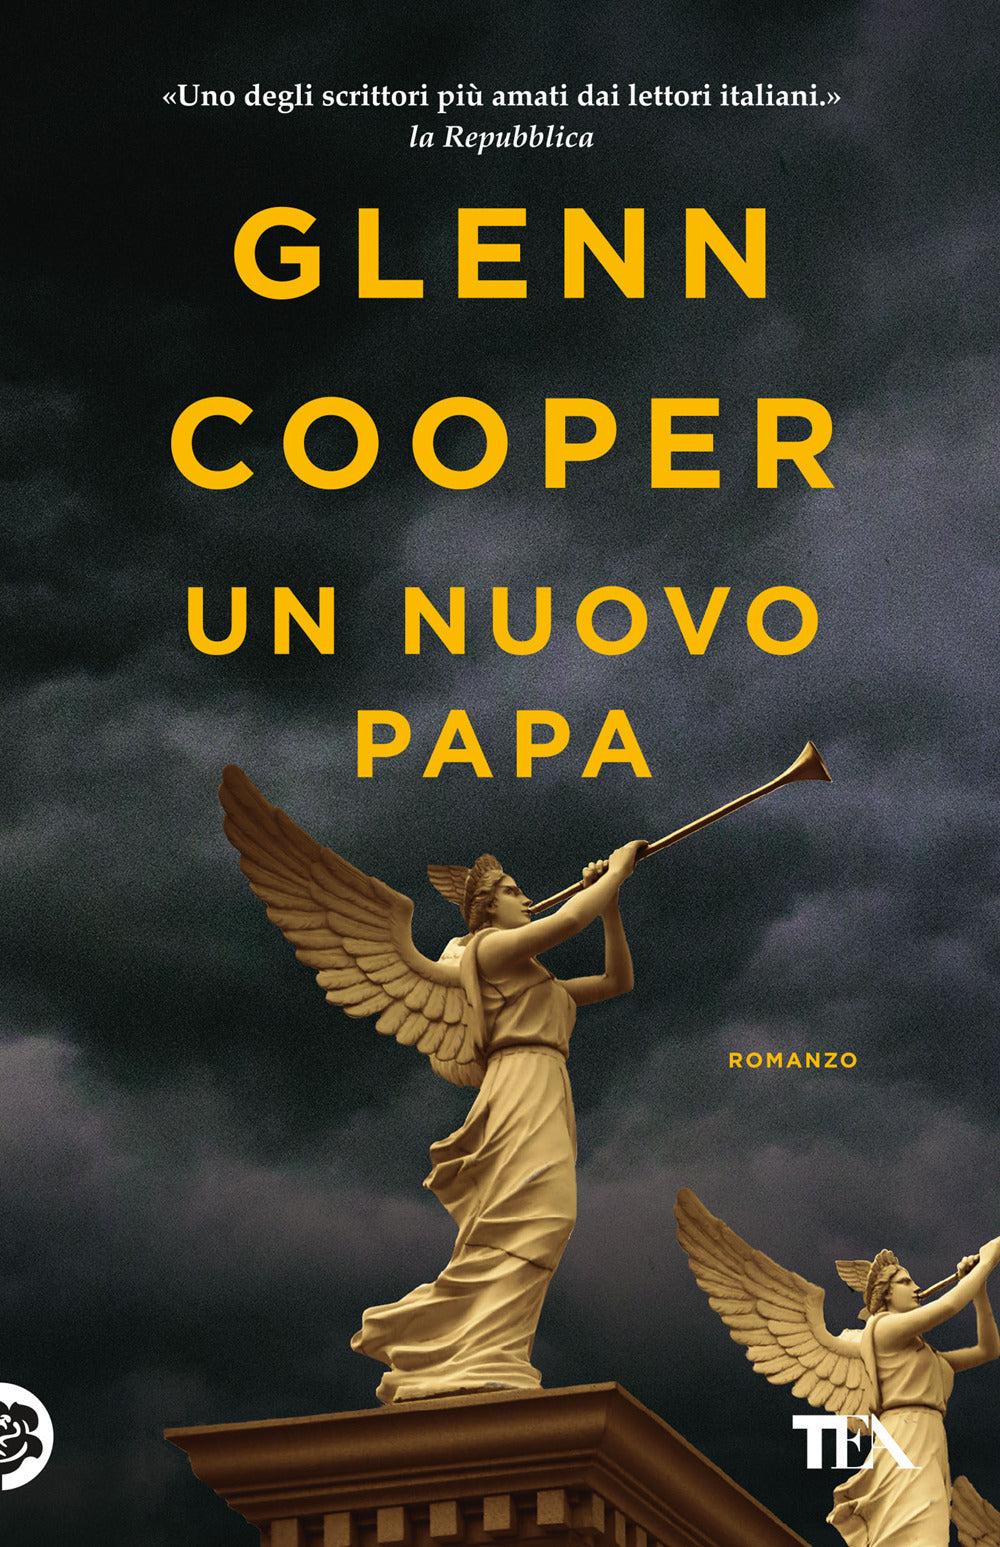 La verità di Maria” di Glenn Cooper: recensione libro